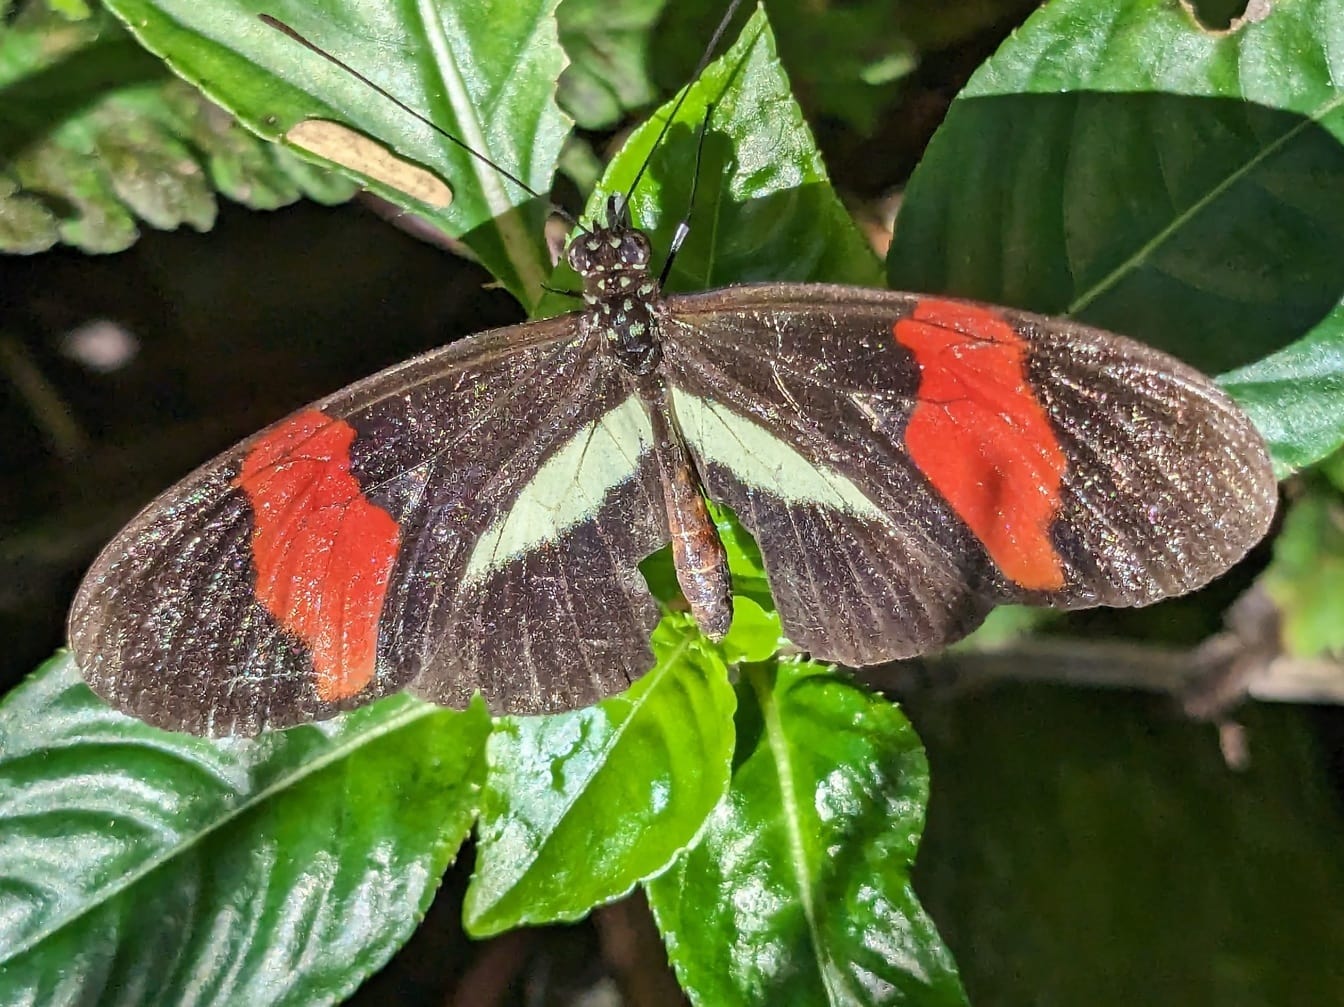 Postman butterfly (Heliconius melpomene)